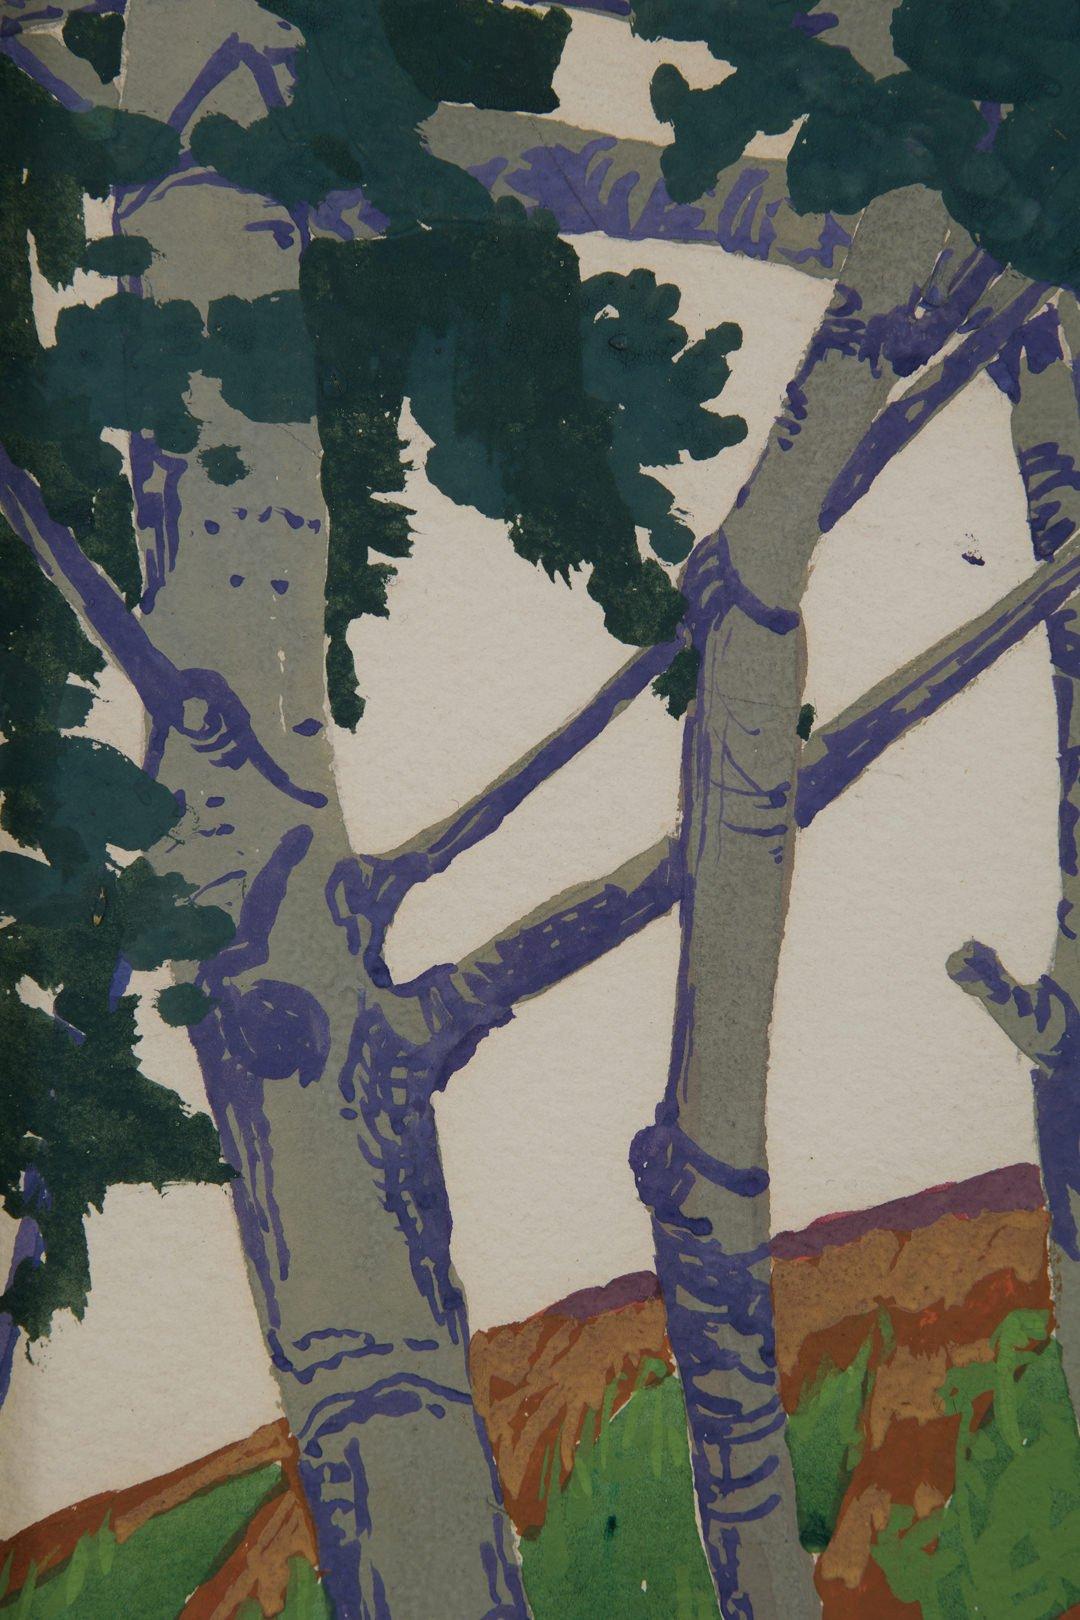 Hillside and Stream, moderne Malerei der Cleveland School des frühen 20. Jahrhunderts (Amerikanische Moderne), Painting, von Clara Deike